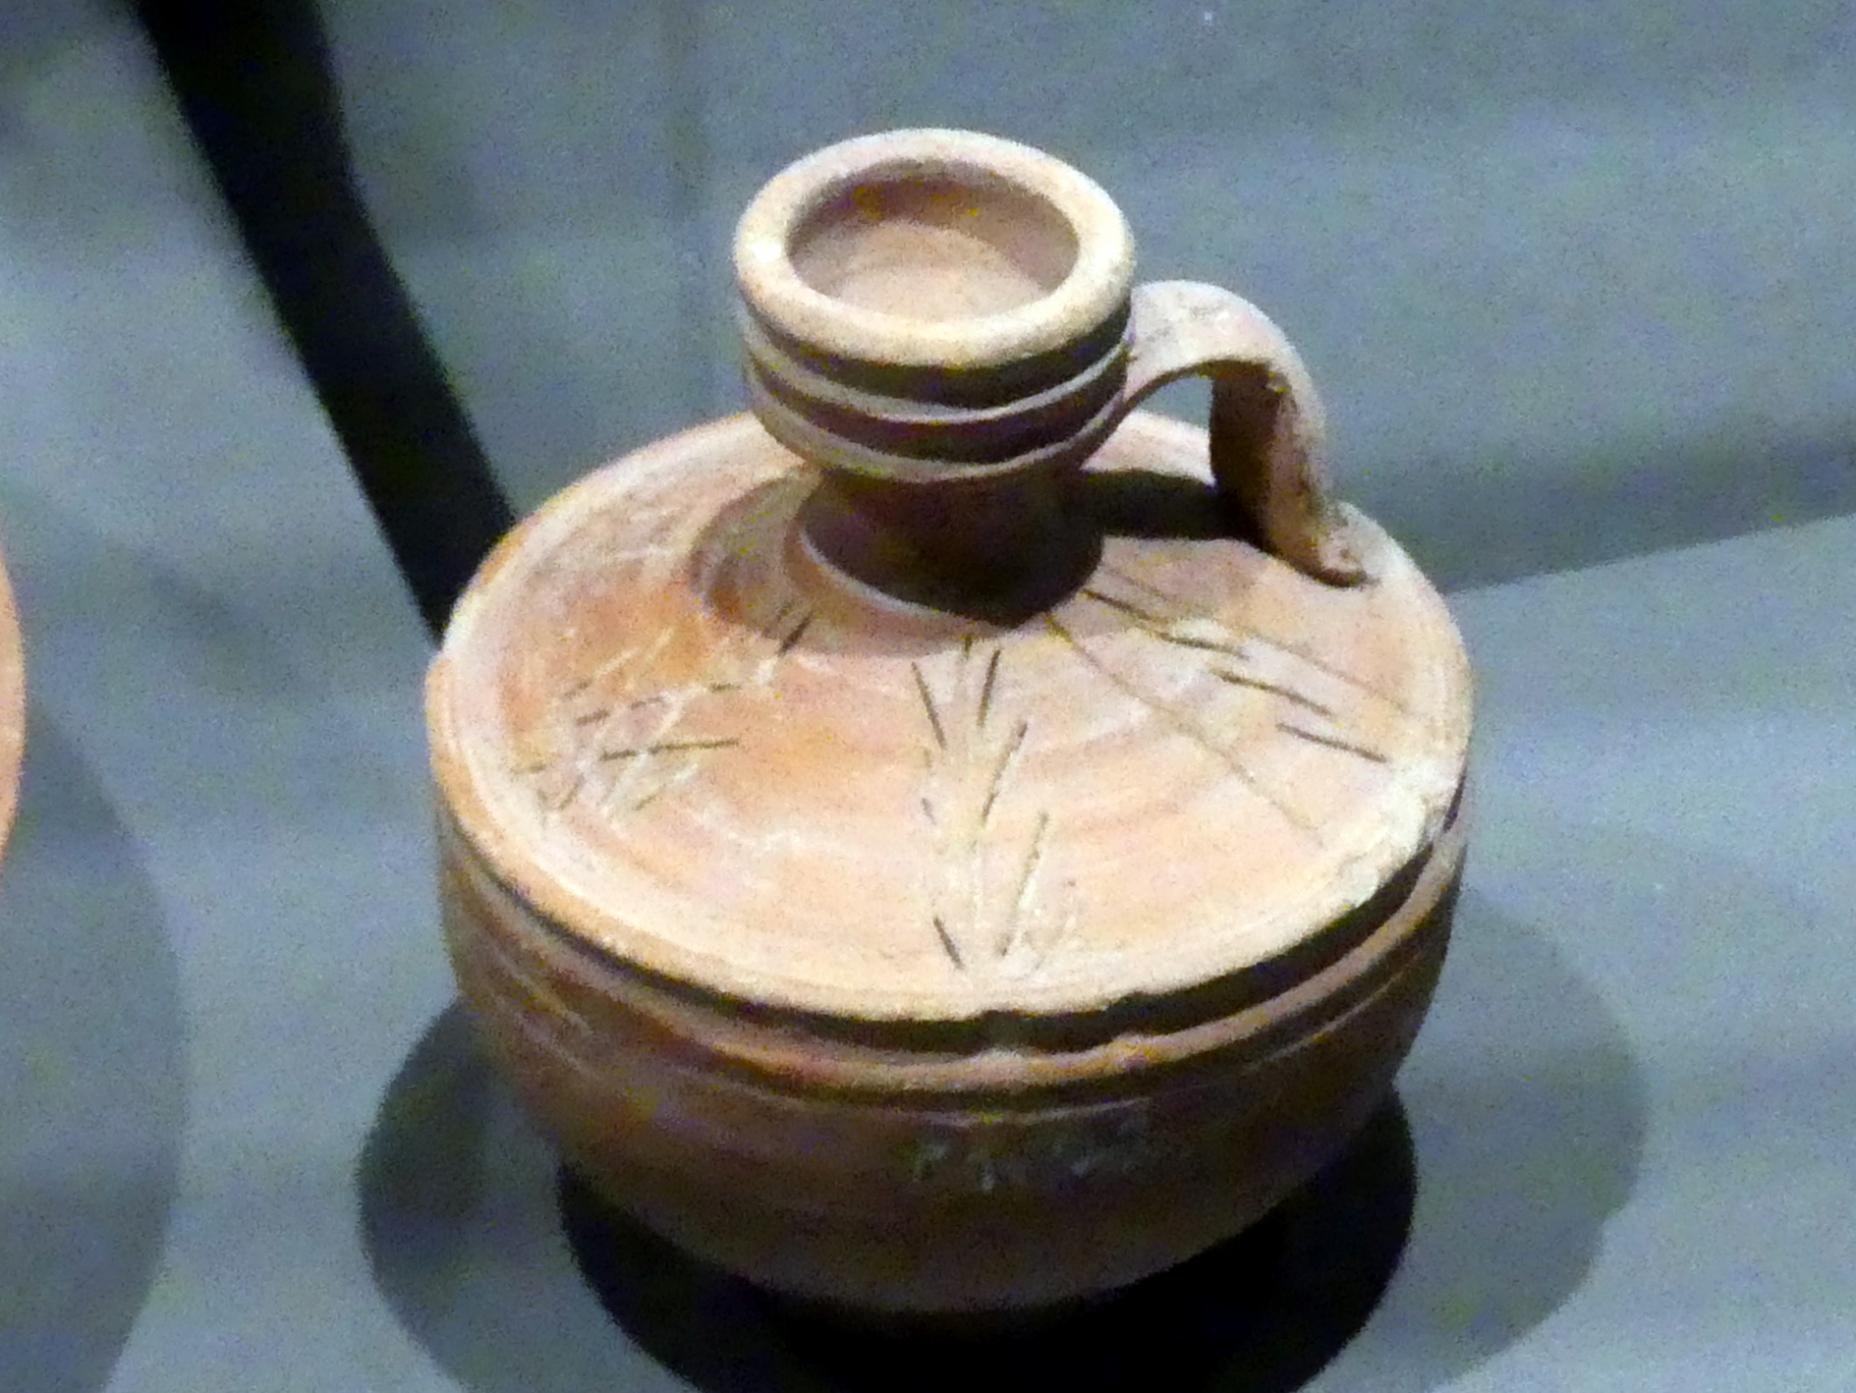 Henkelkanne, 200 v. Chr. - 400 n. Chr., Bild 2/3